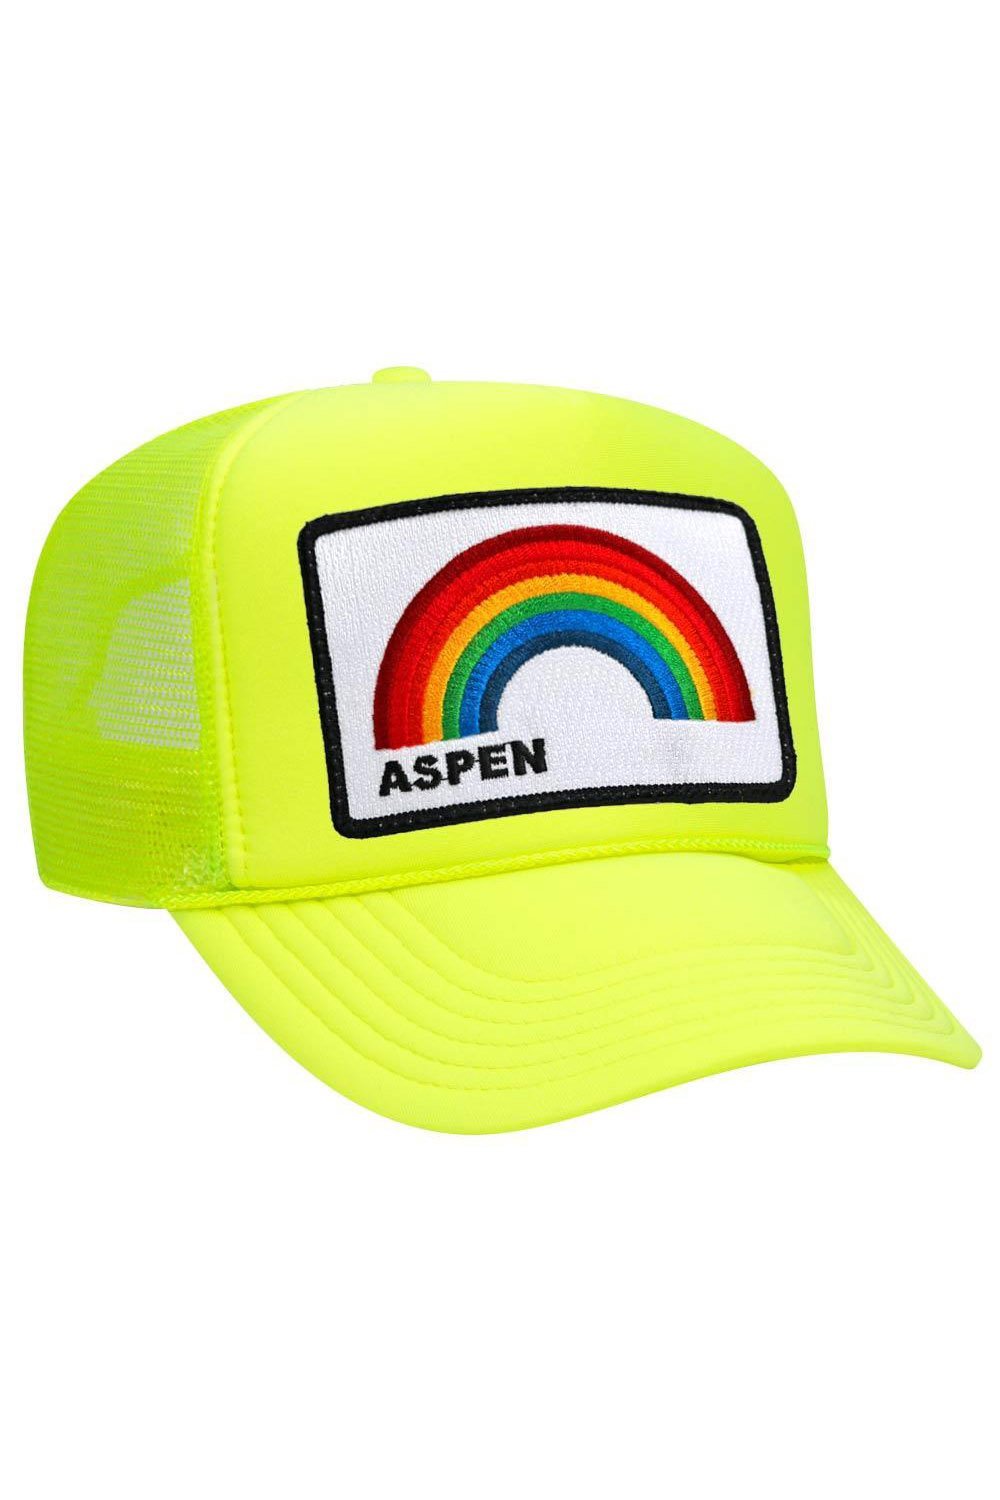 ASPEN RAINBOW TRUCKER HAT HATS Aviator Nation OS NEON YELLOW 